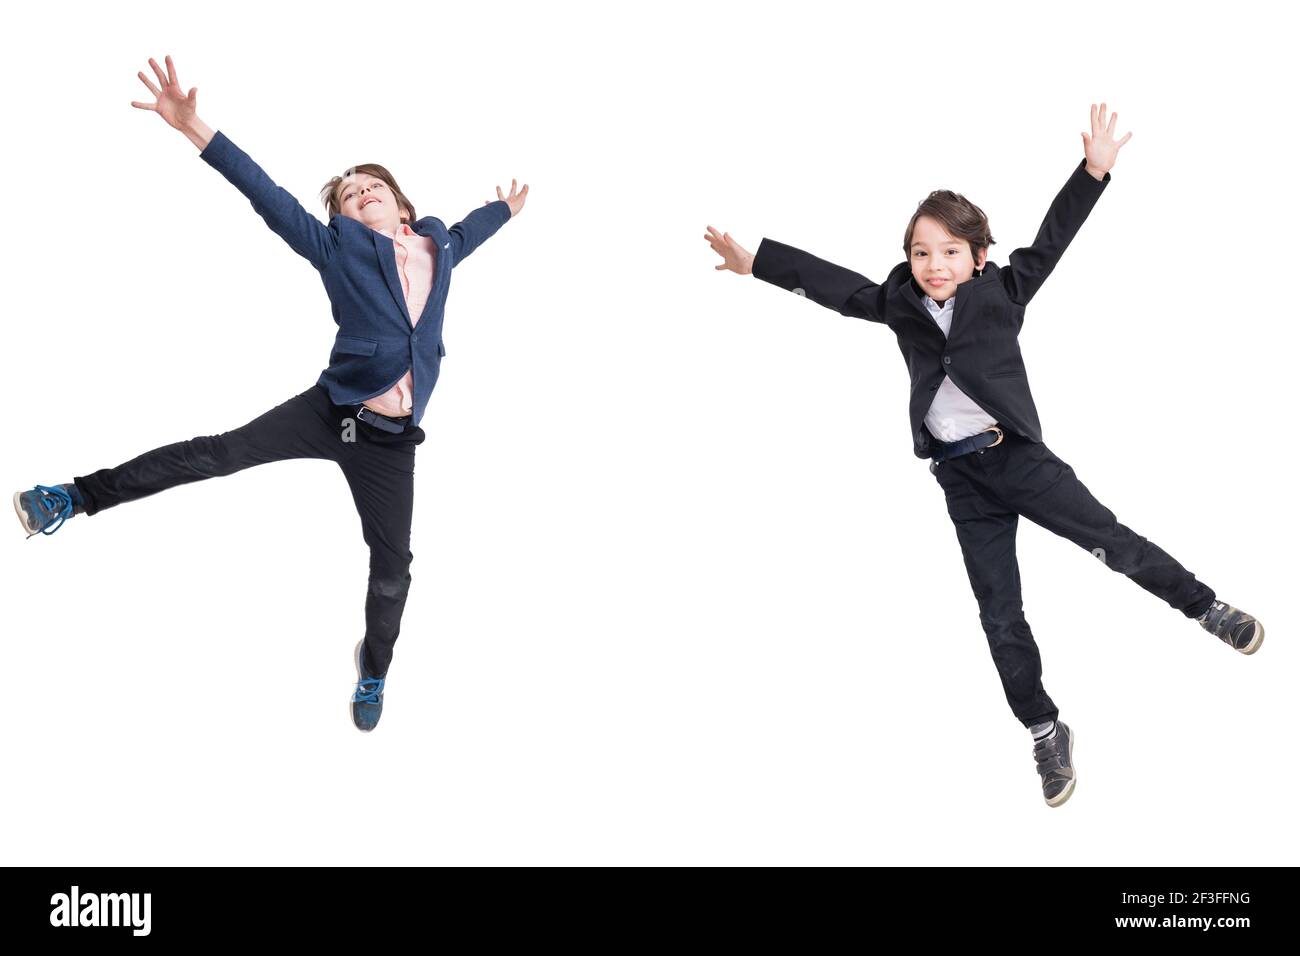 Deux jeunes joies sautant, isolés sur fond blanc Banque D'Images